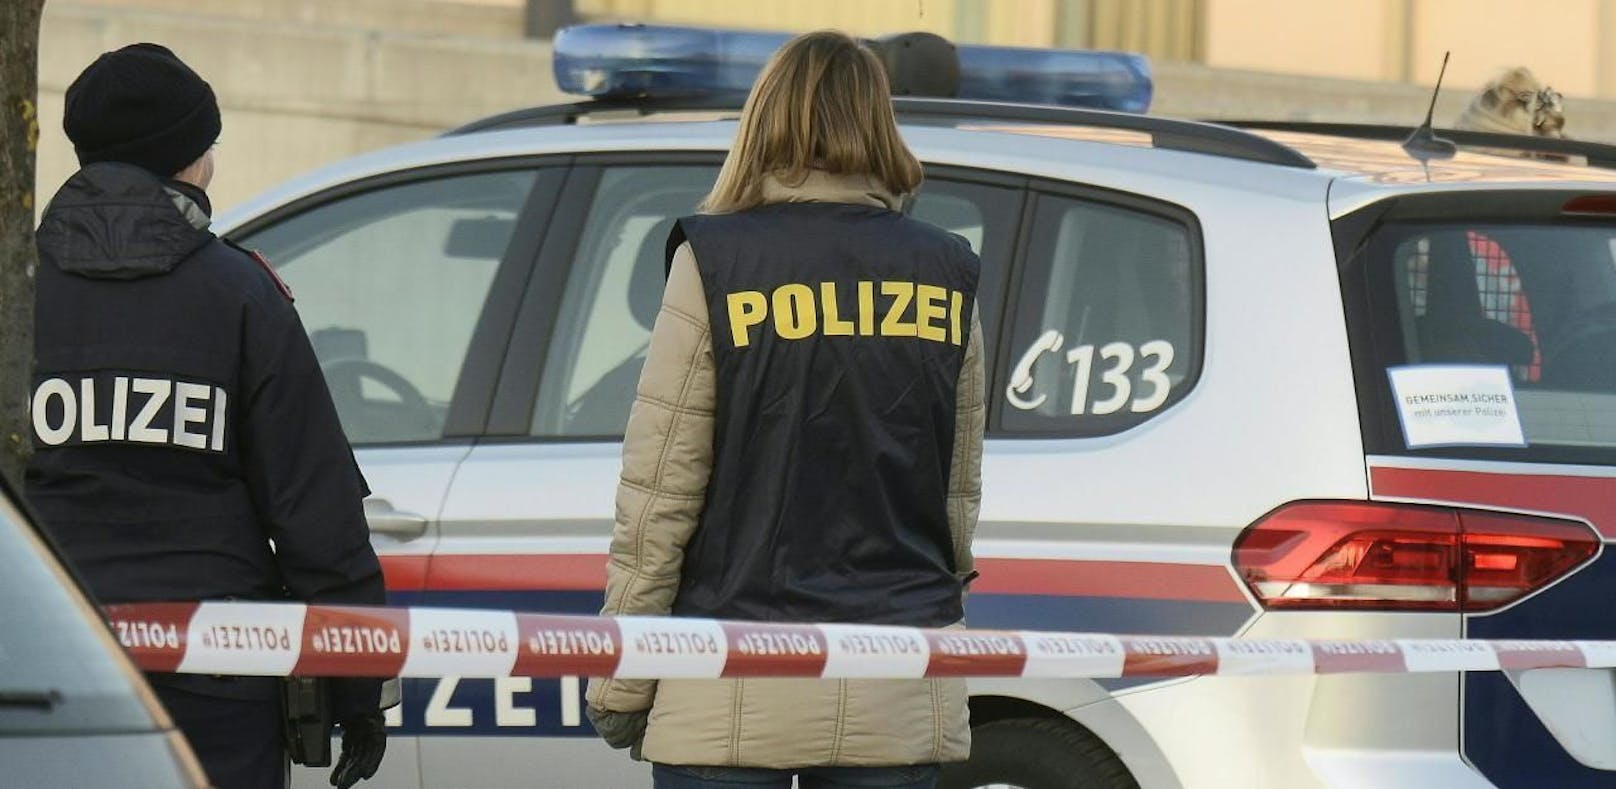 Polizeieinsatz in Wels: Die Polizei nahm den verdächtigen 36-Jährigen fest.